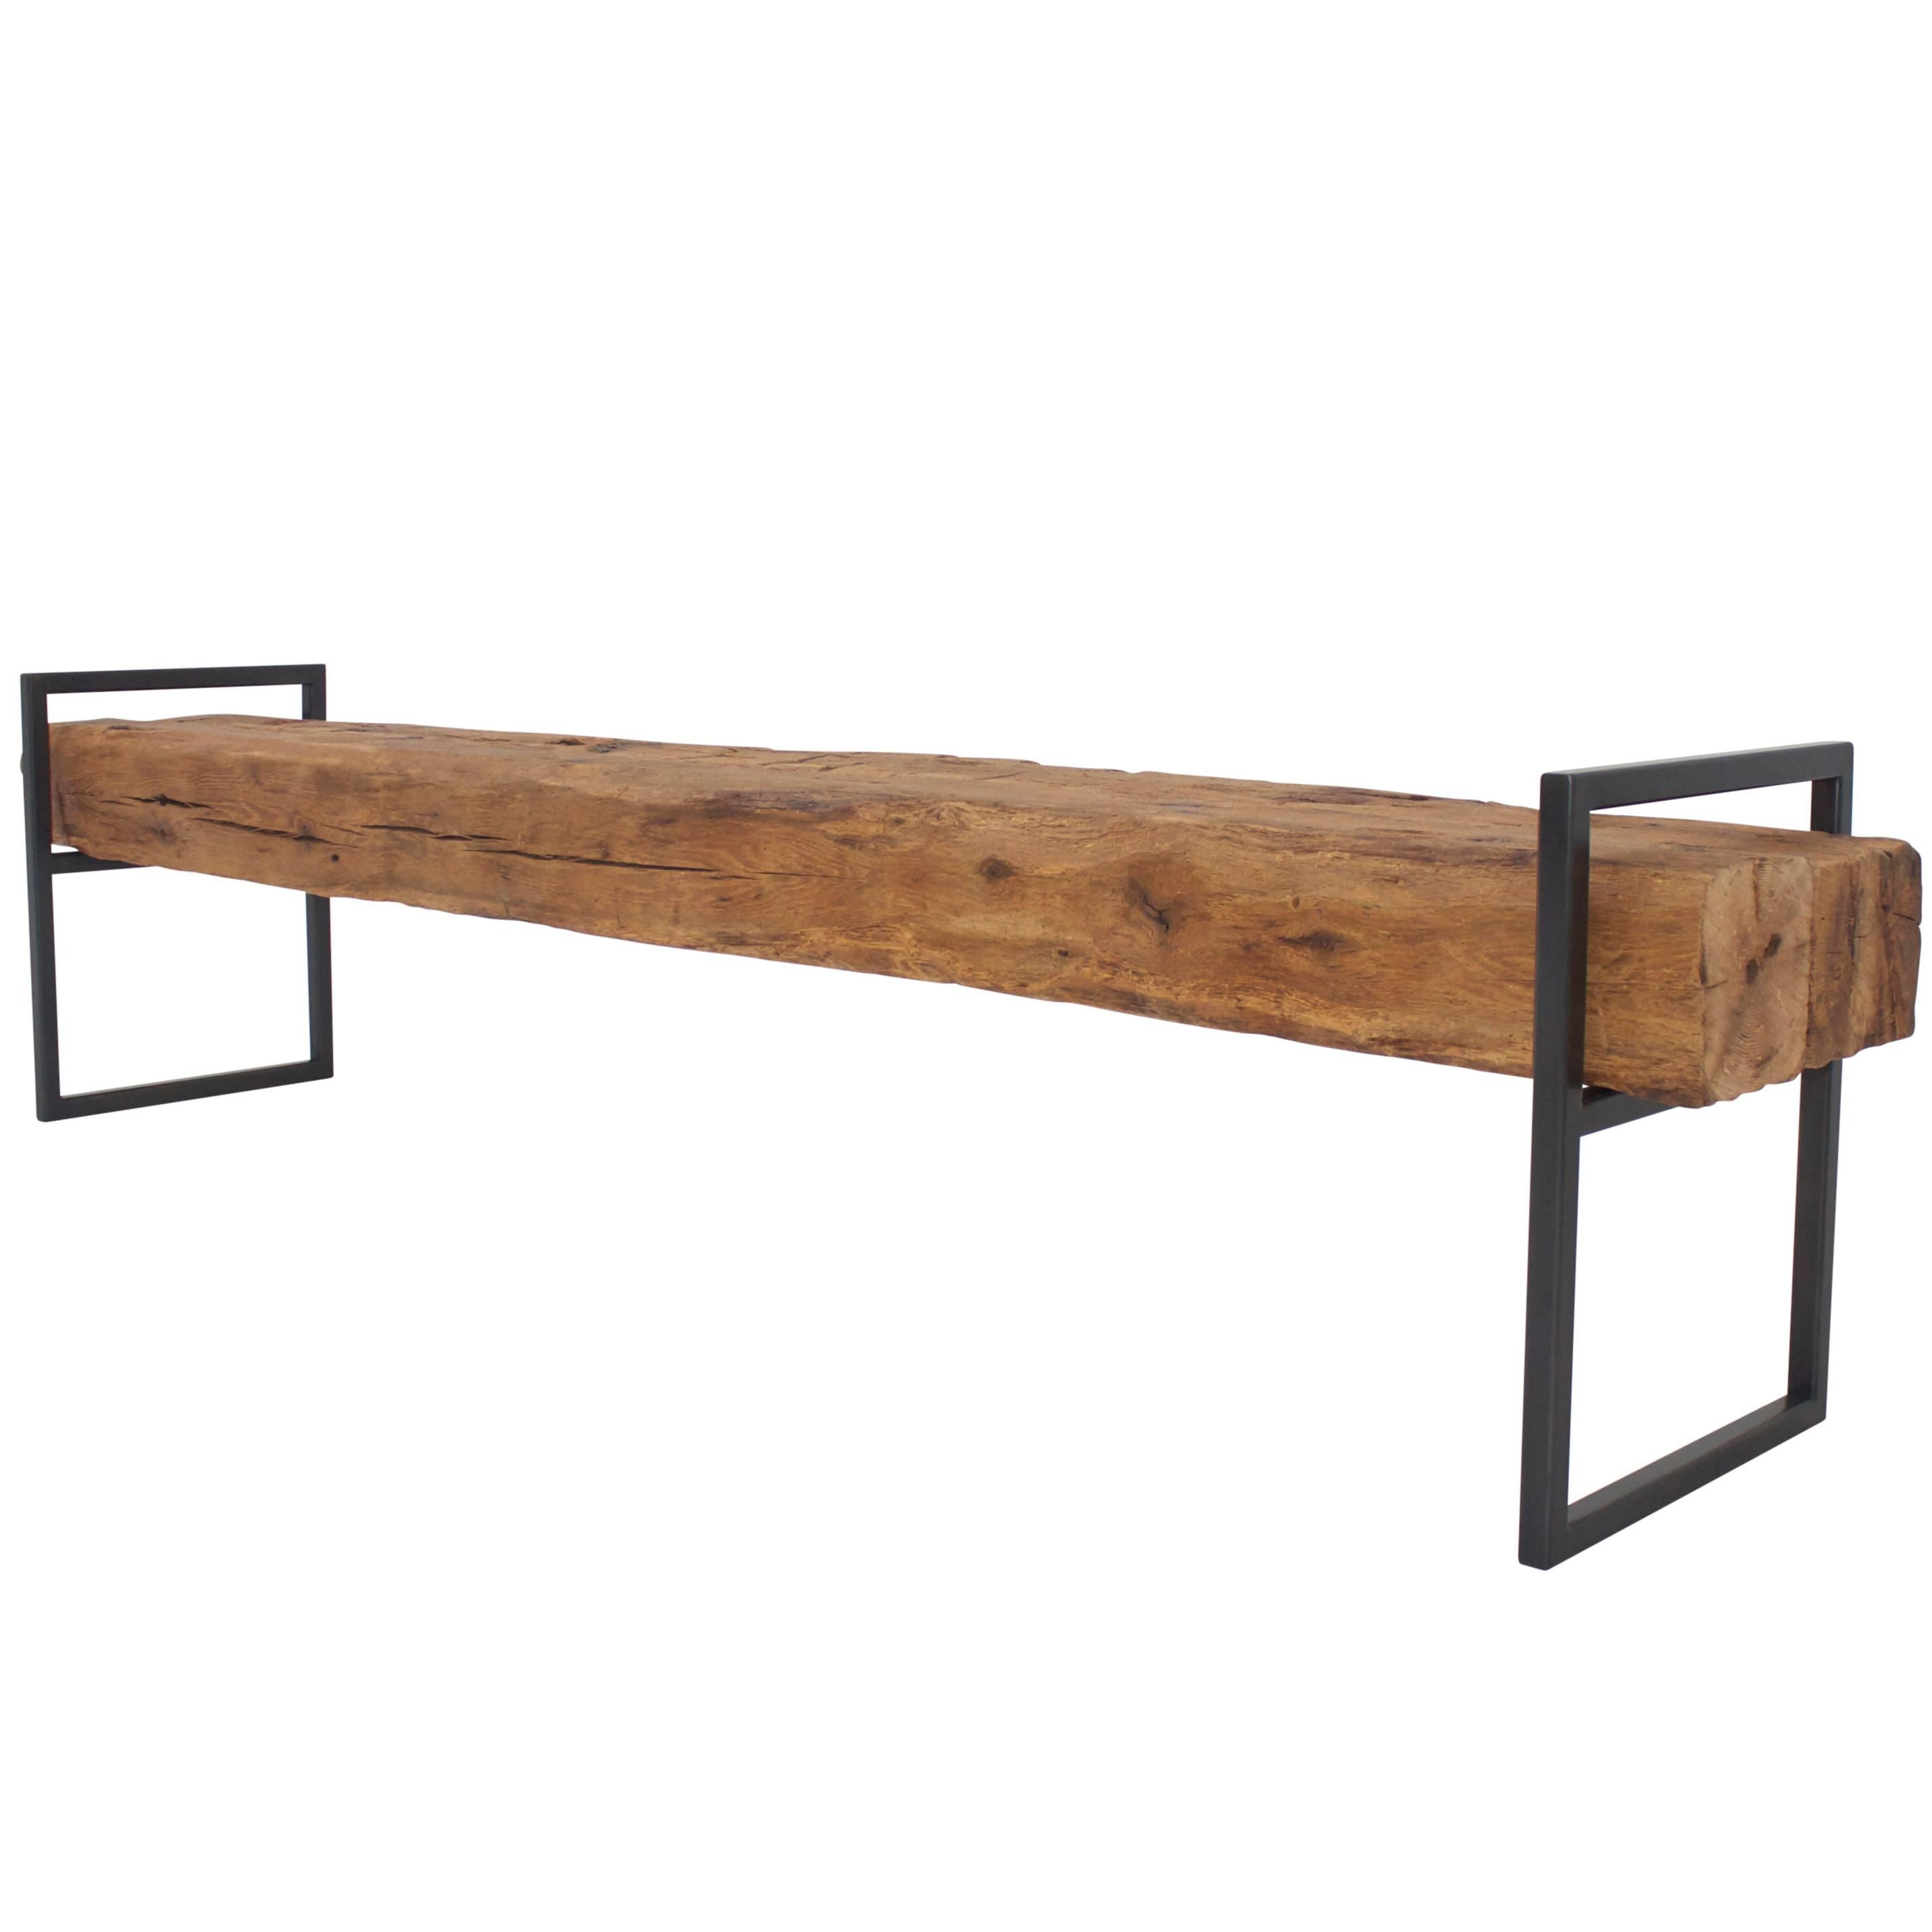 Banc moderne et minimaliste en poutres en bois de chêne récupérées avec cadre en acier soudé en vente